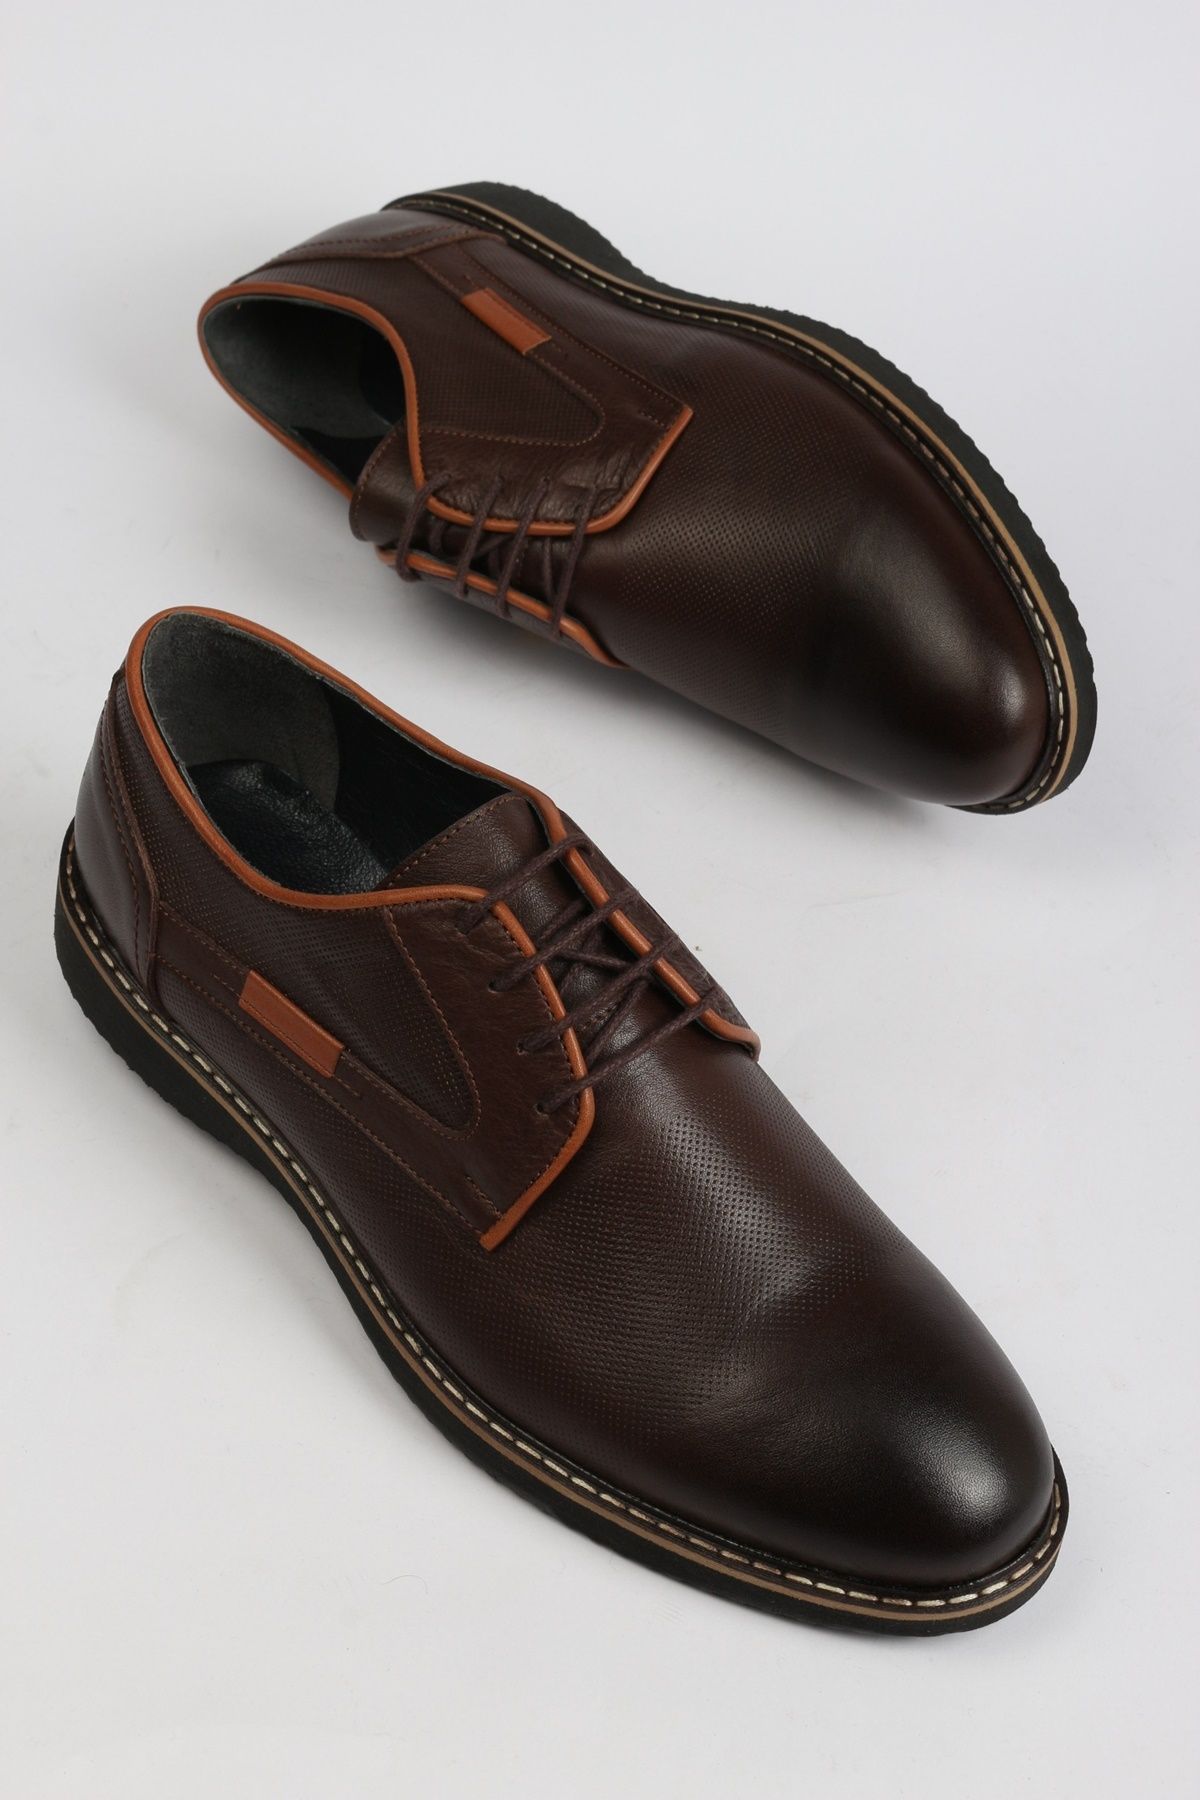 ayakPARK Erkek Hakiki Deri Kahverengi Klasik Günlük Ayakkabı